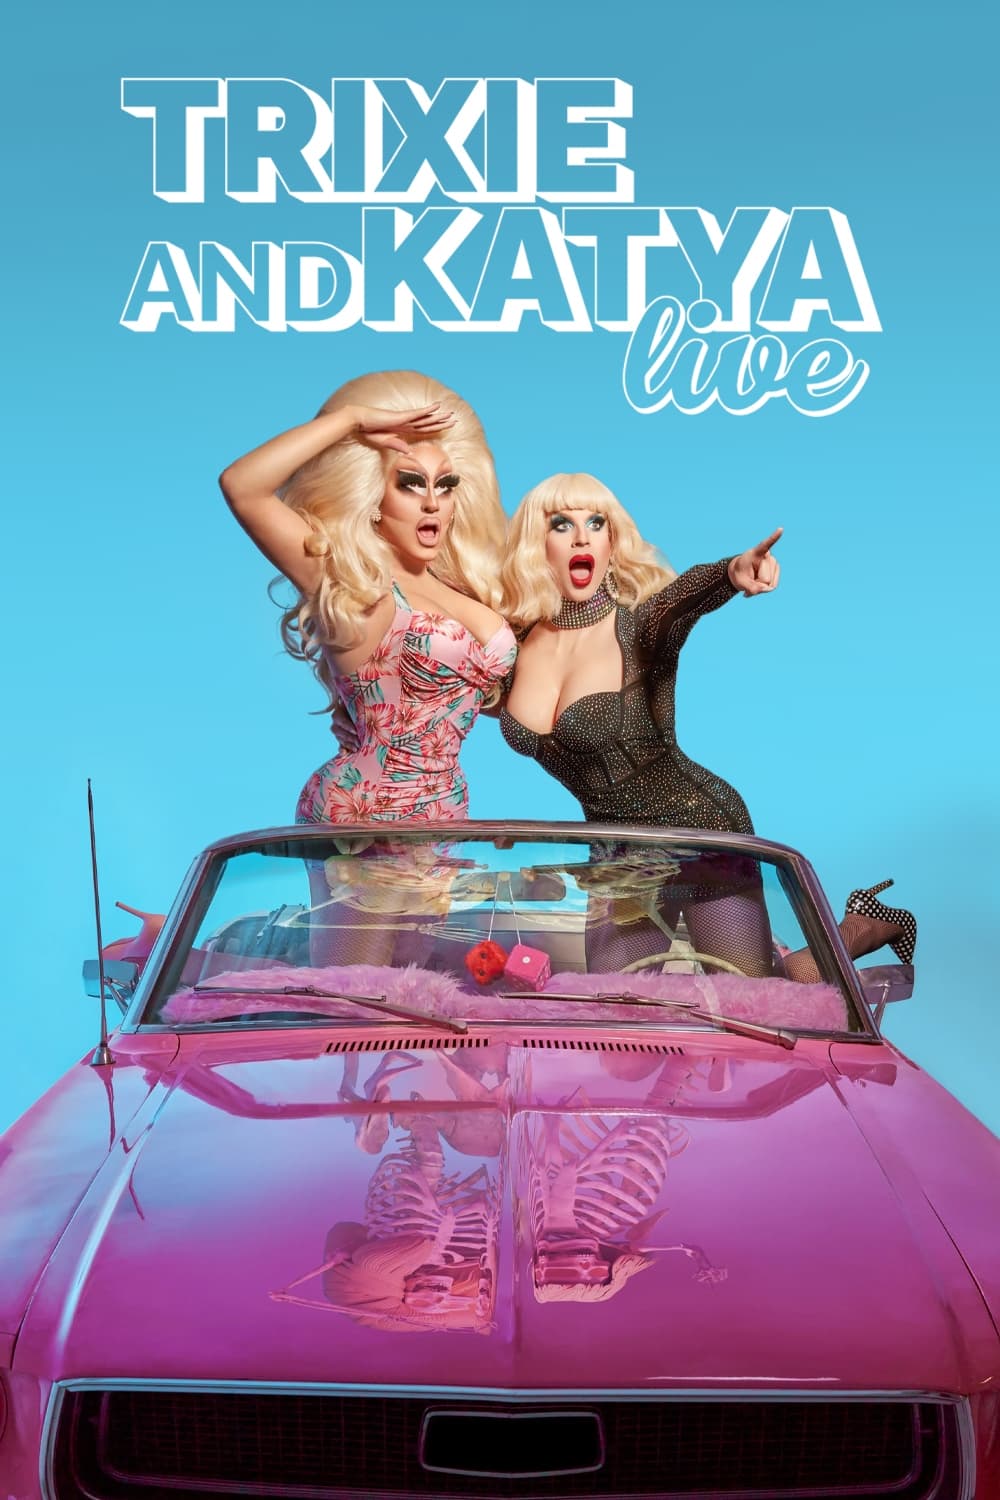 Trixie & Katya Live - The Last Show